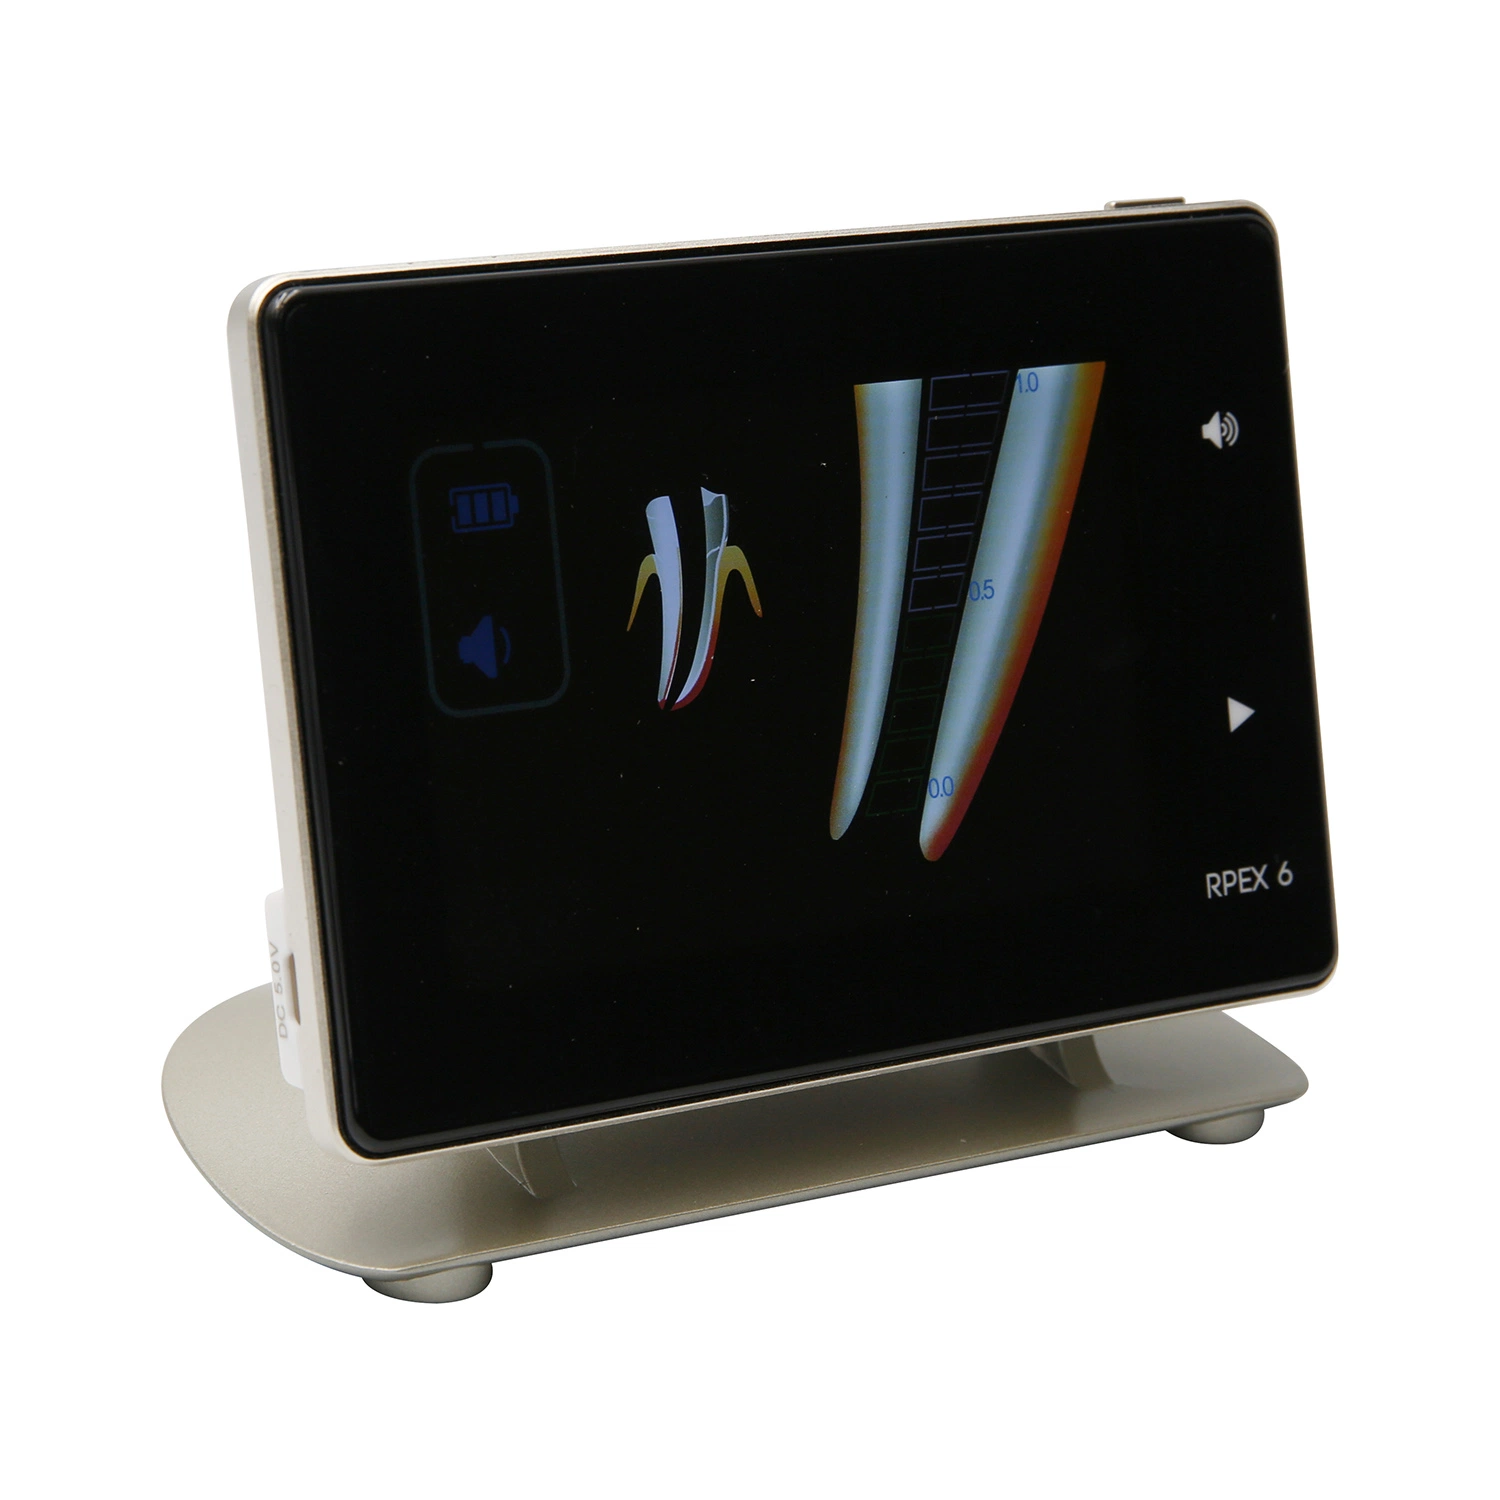 Стоматологическое оборудование для питания корневых каналов измерения локатор Apex